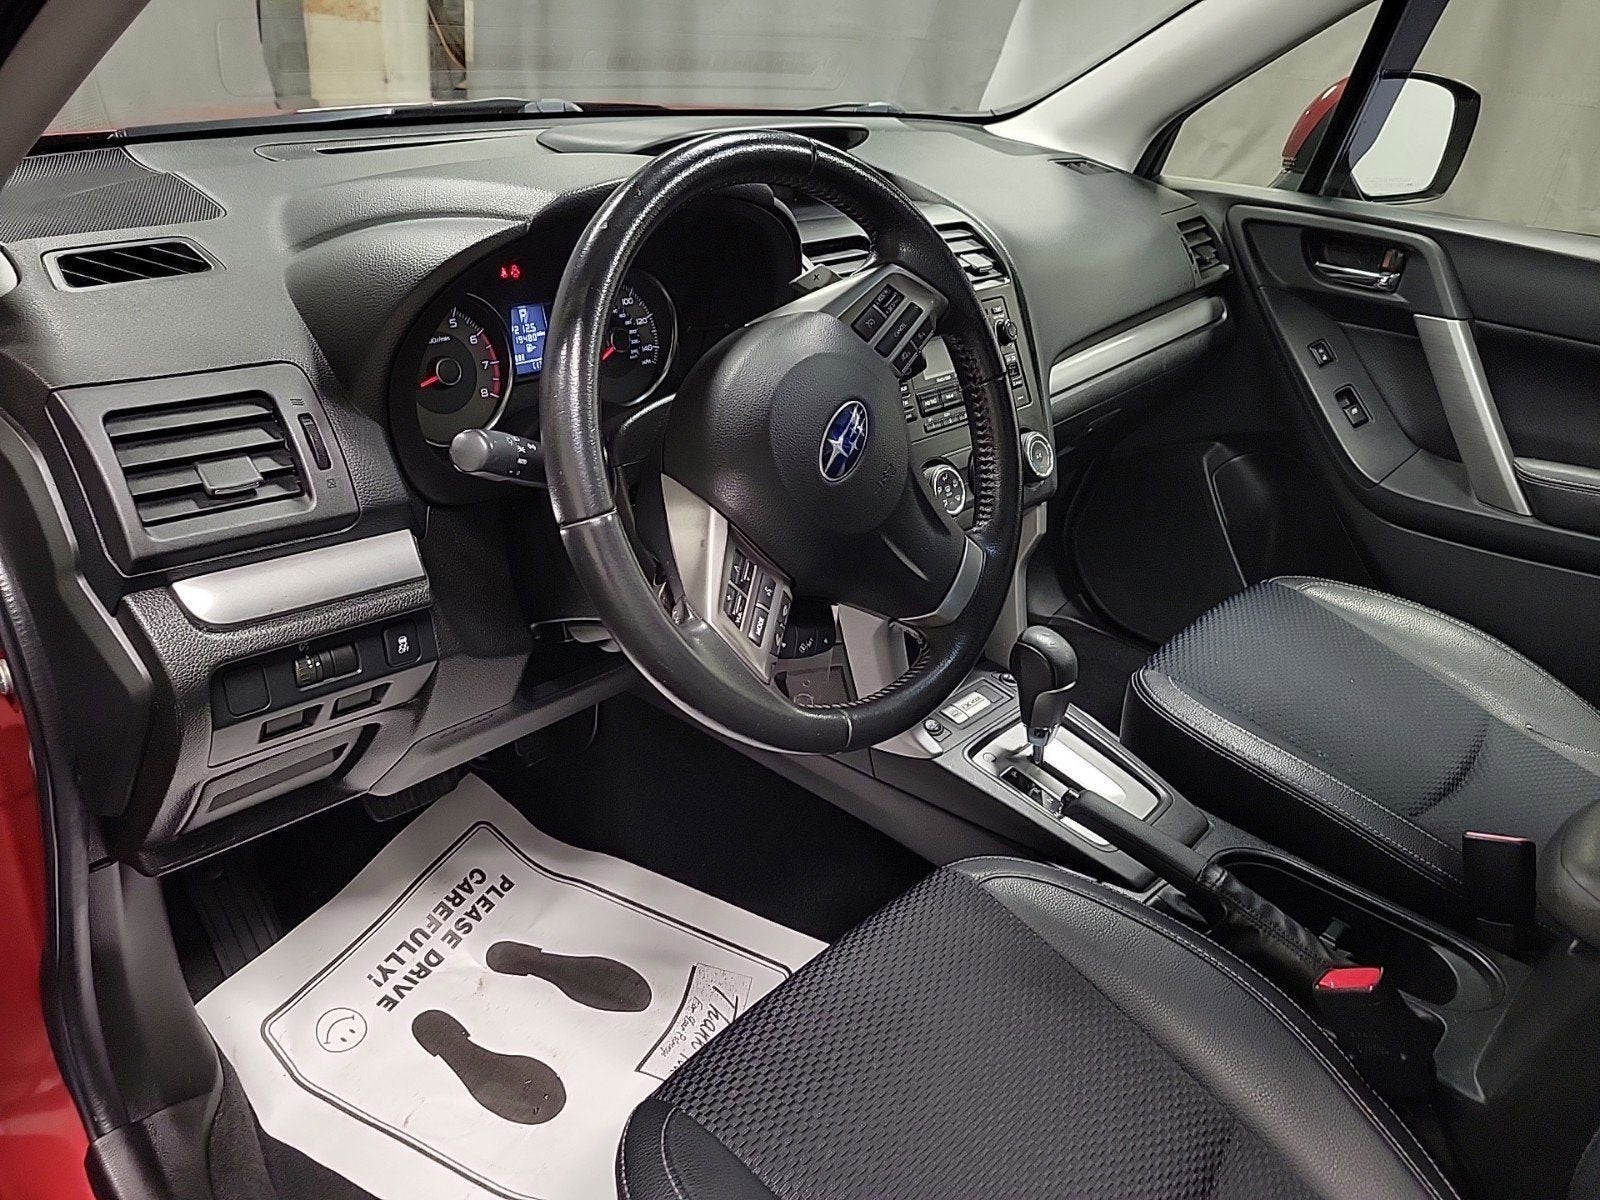 2014 Subaru Forester 2.0XT Premium